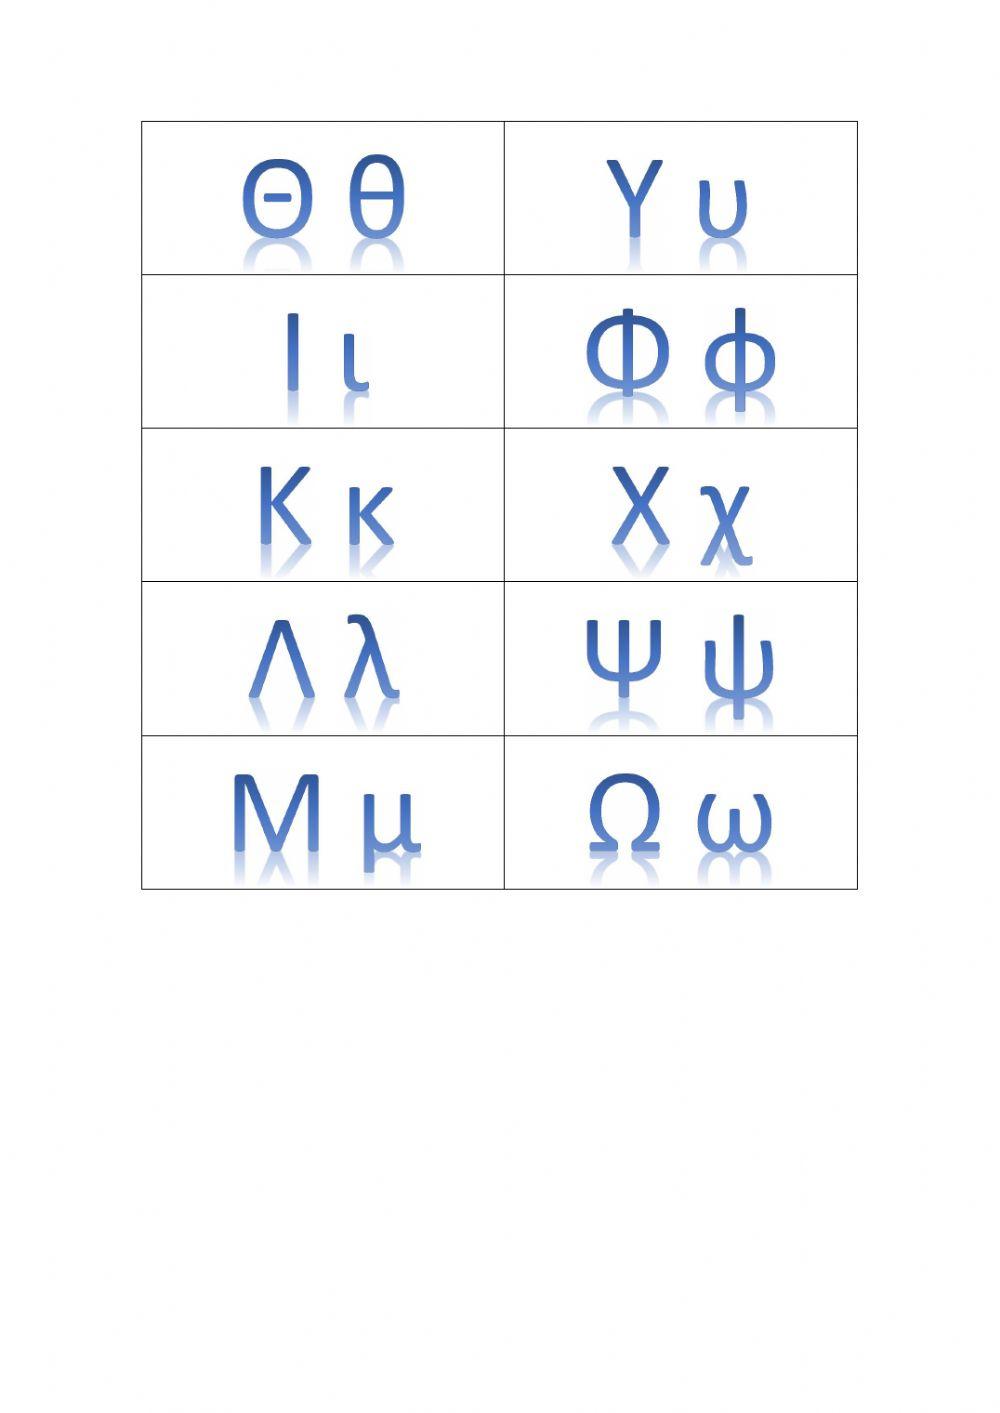 Εισαγωγή στο ελληνικό αλφάβητο (γράμματα και προφορά)